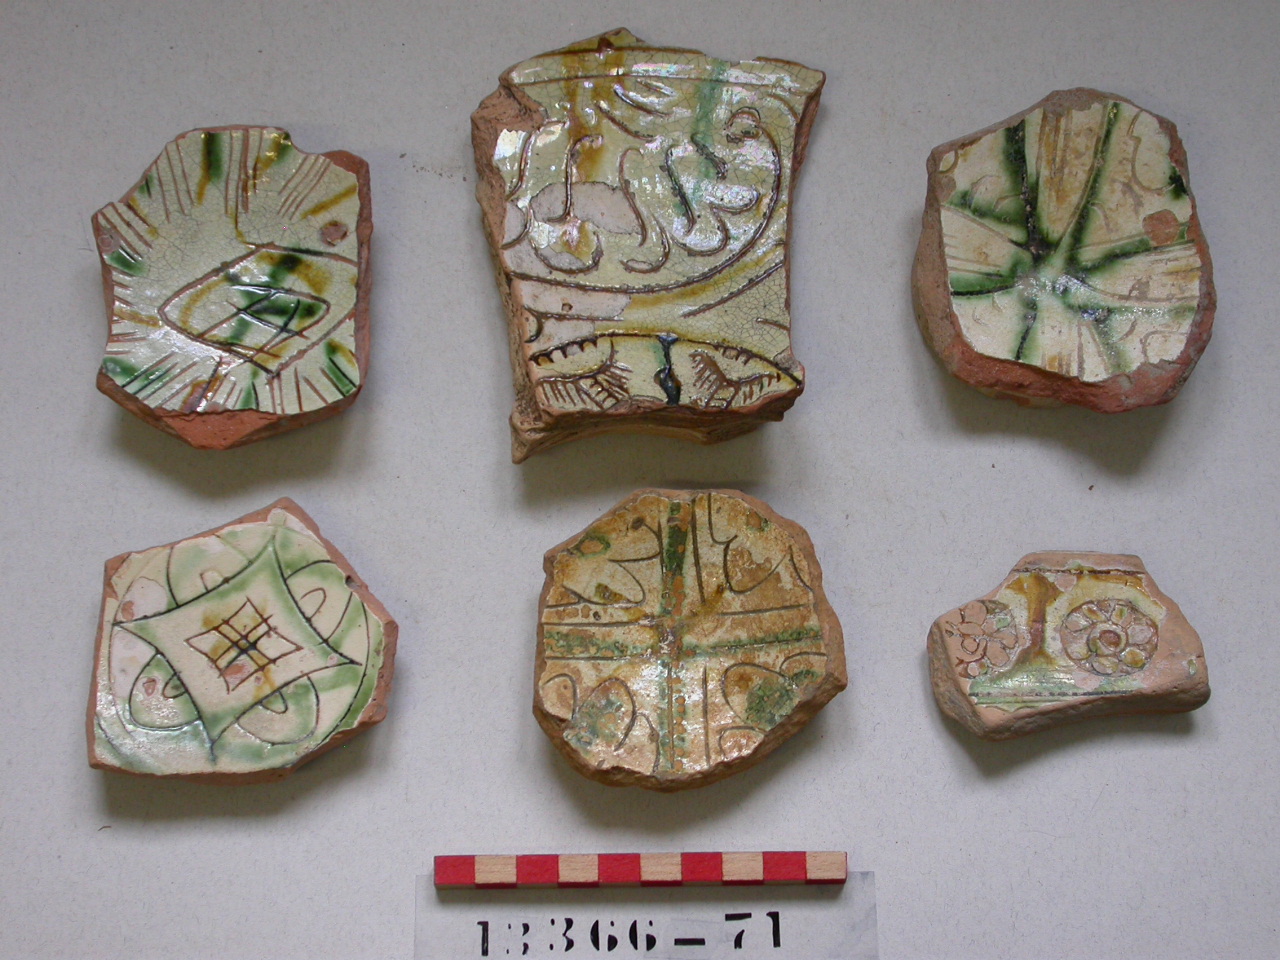 motivi decorativi vegetali a palmette (scodella, frammento) - ambito veneziano (prima metà sec. XV)